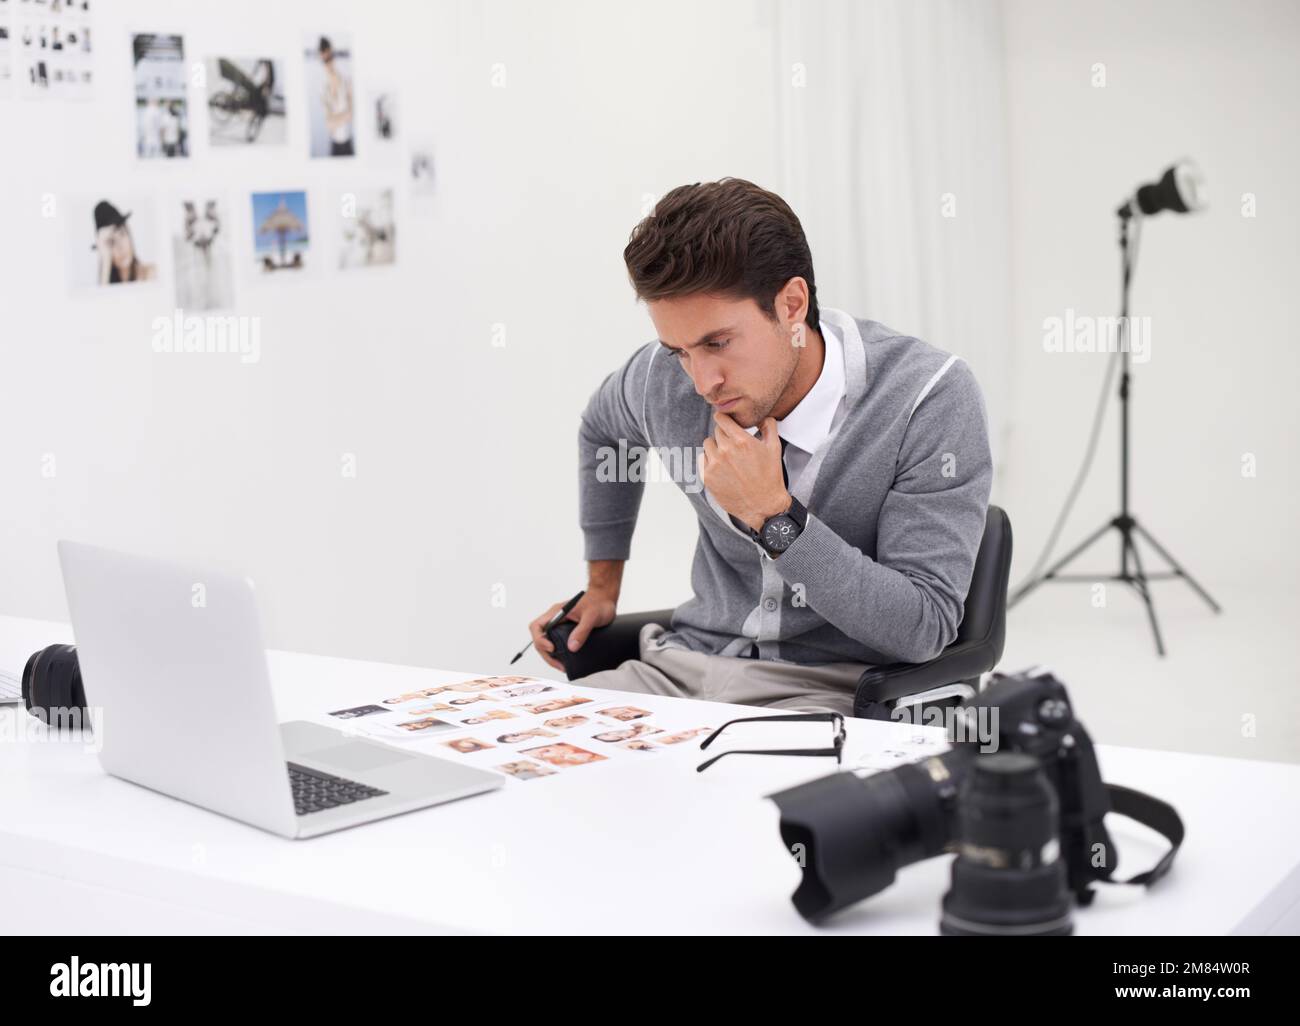 Ich Suche das Titelbild. Ein junger Fotograf, der an seinem Schreibtisch  sitzt und Bilder bearbeitet Stockfotografie - Alamy